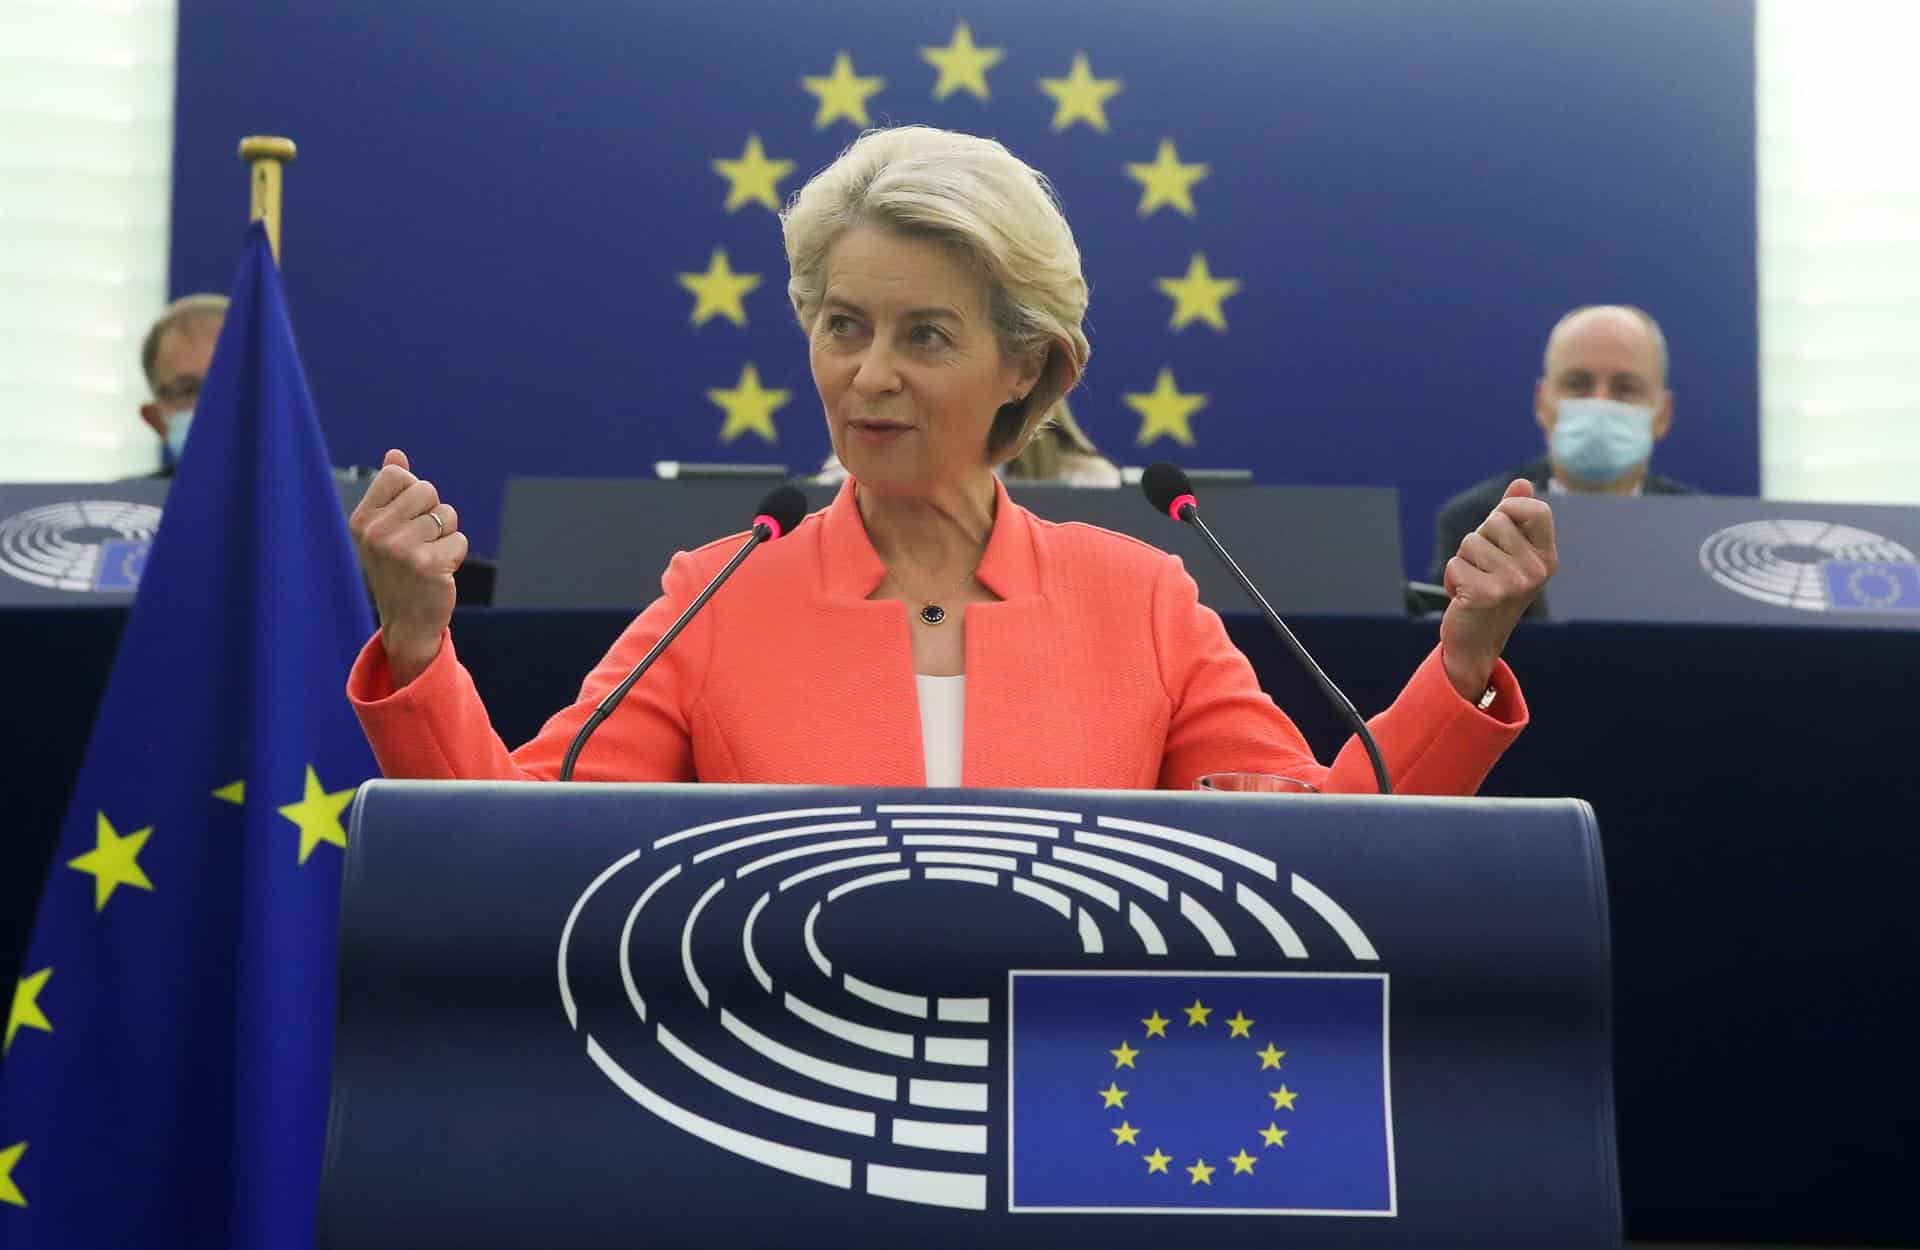 La Presidenta de la Comisión Europea, Ursula Von der Leyen, durante su discurso en el Parlamento Europeo